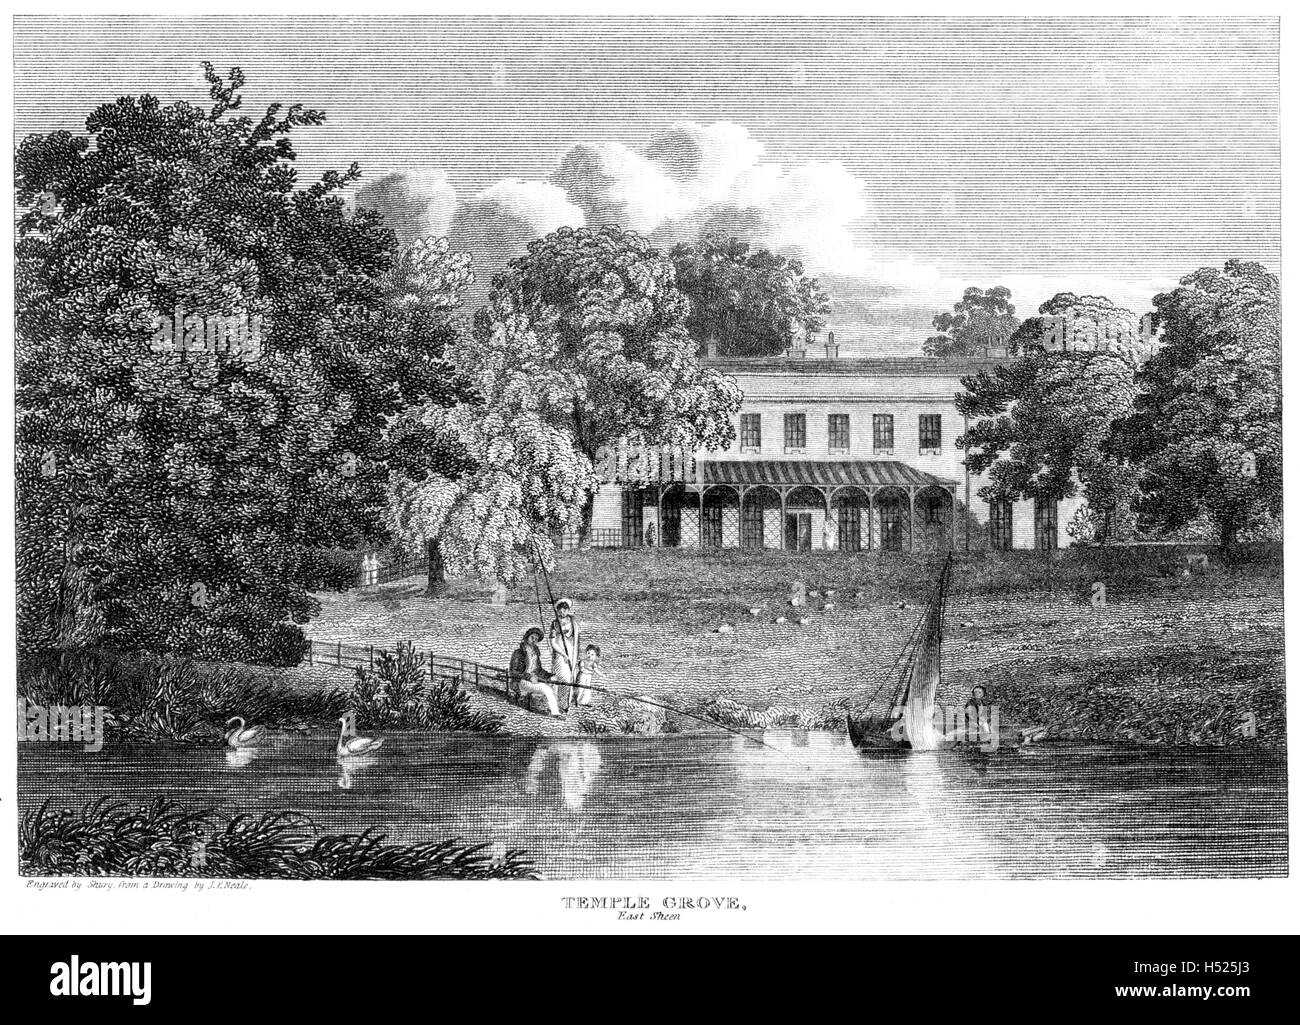 Une gravure de Temple Grove, East Sheen, Surrey numérisées à haute résolution à partir d'un livre imprimé en 1812. Avis de droit d'auteur Banque D'Images